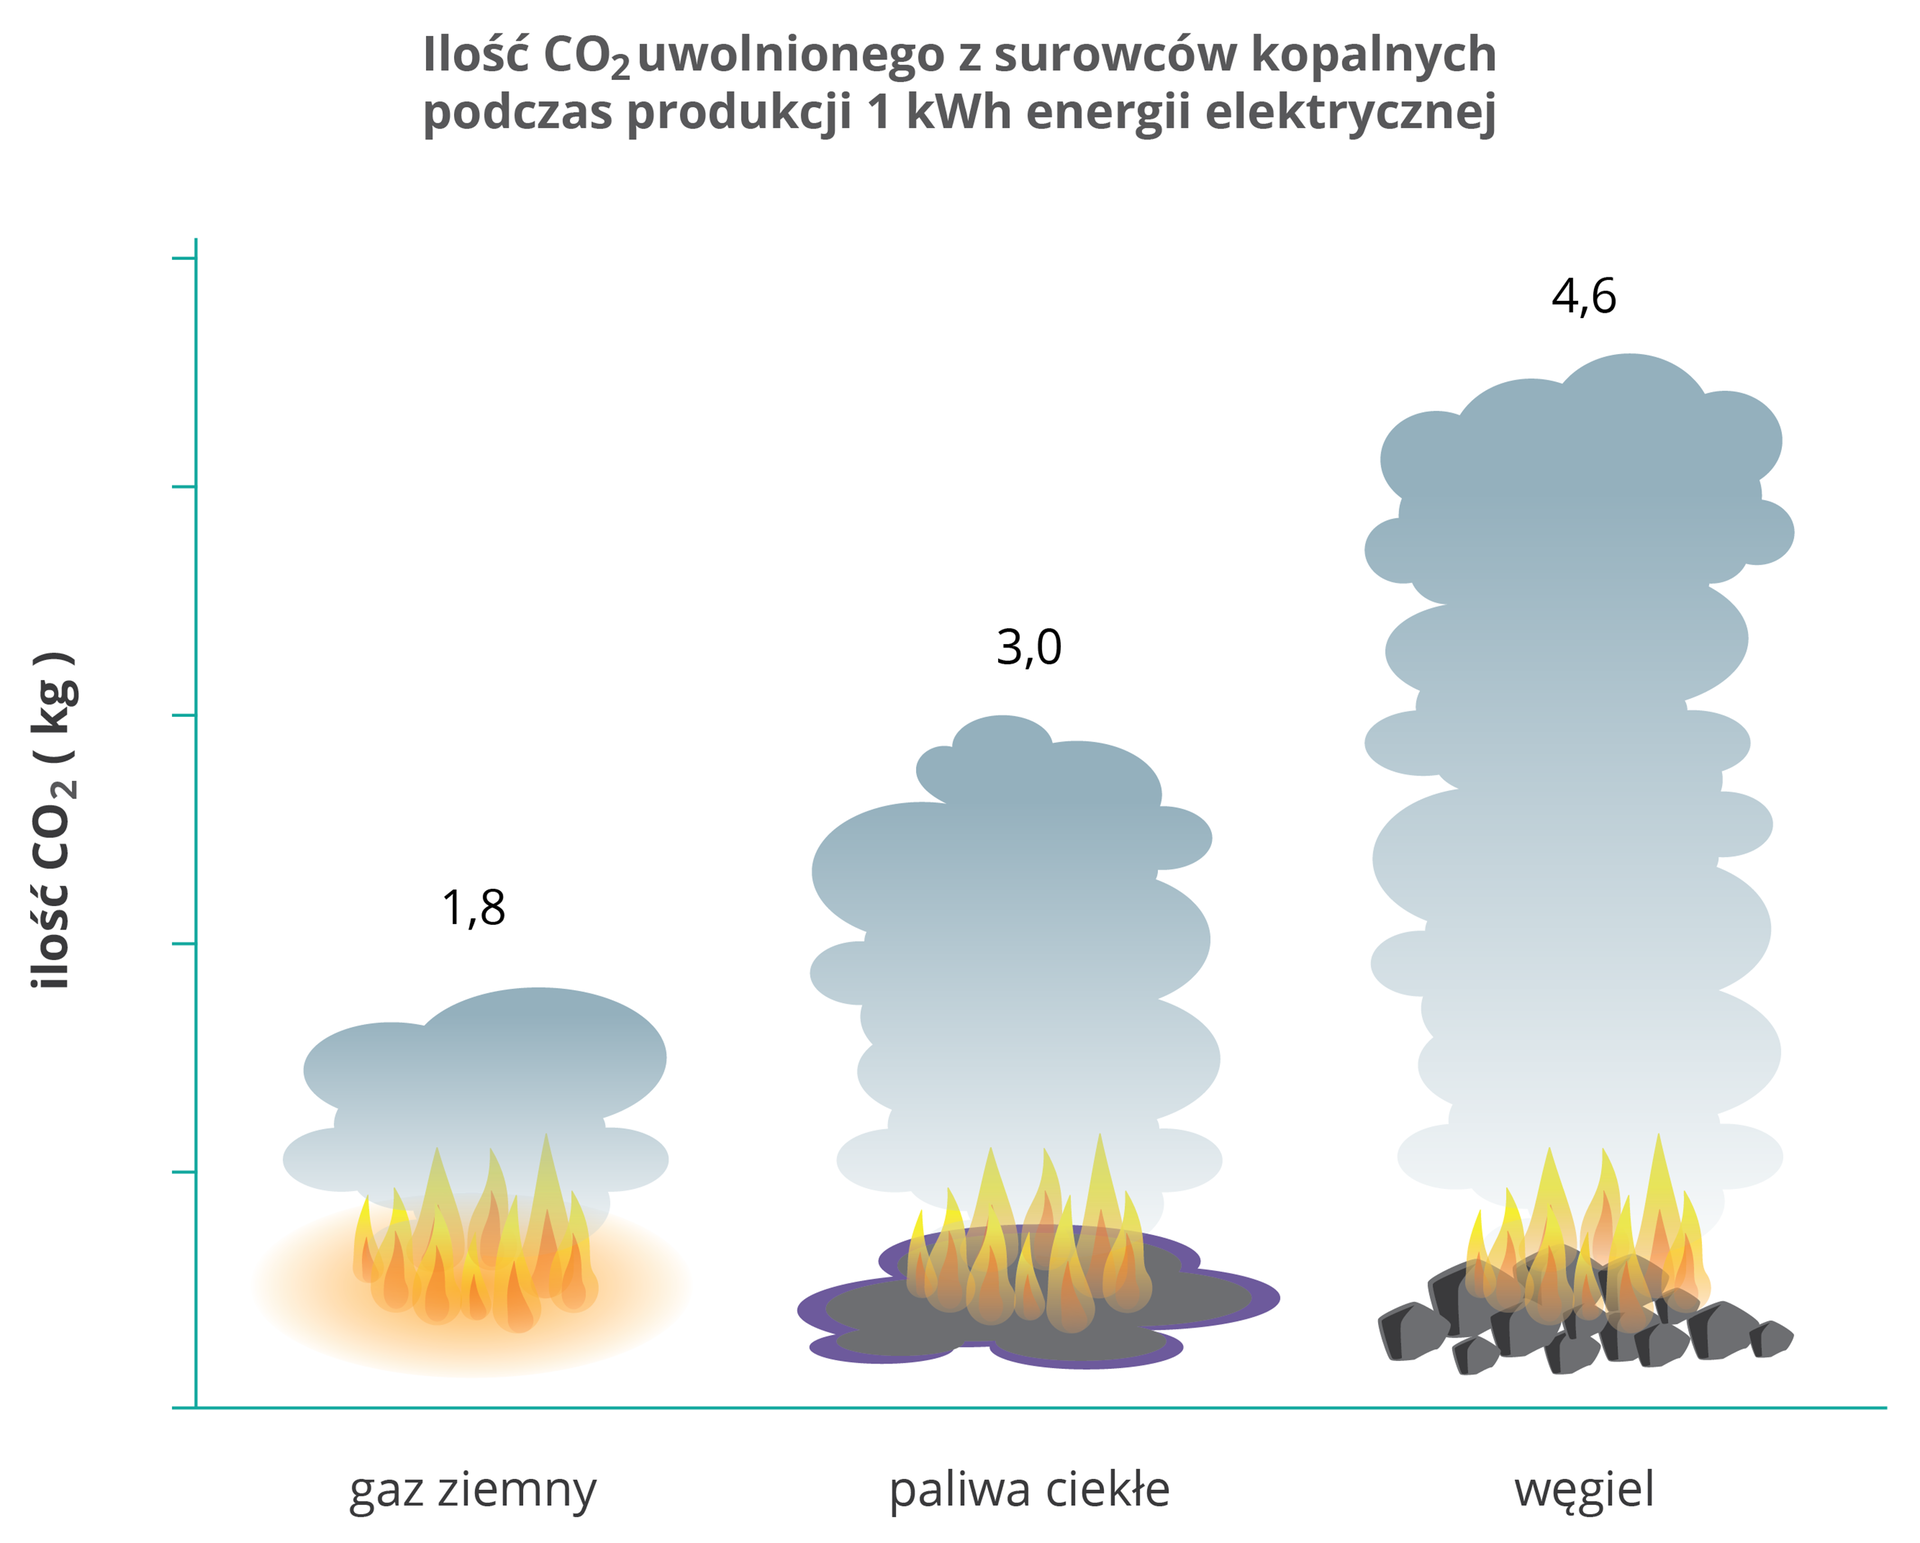 diagram przedstawia ilość paliw potrzebnych do uzyskania 1 kWh energii. W przypadku gazu jest to 1,8 kg, paliw ciekłych 3,0 kg, a węgla 4,6 kg.